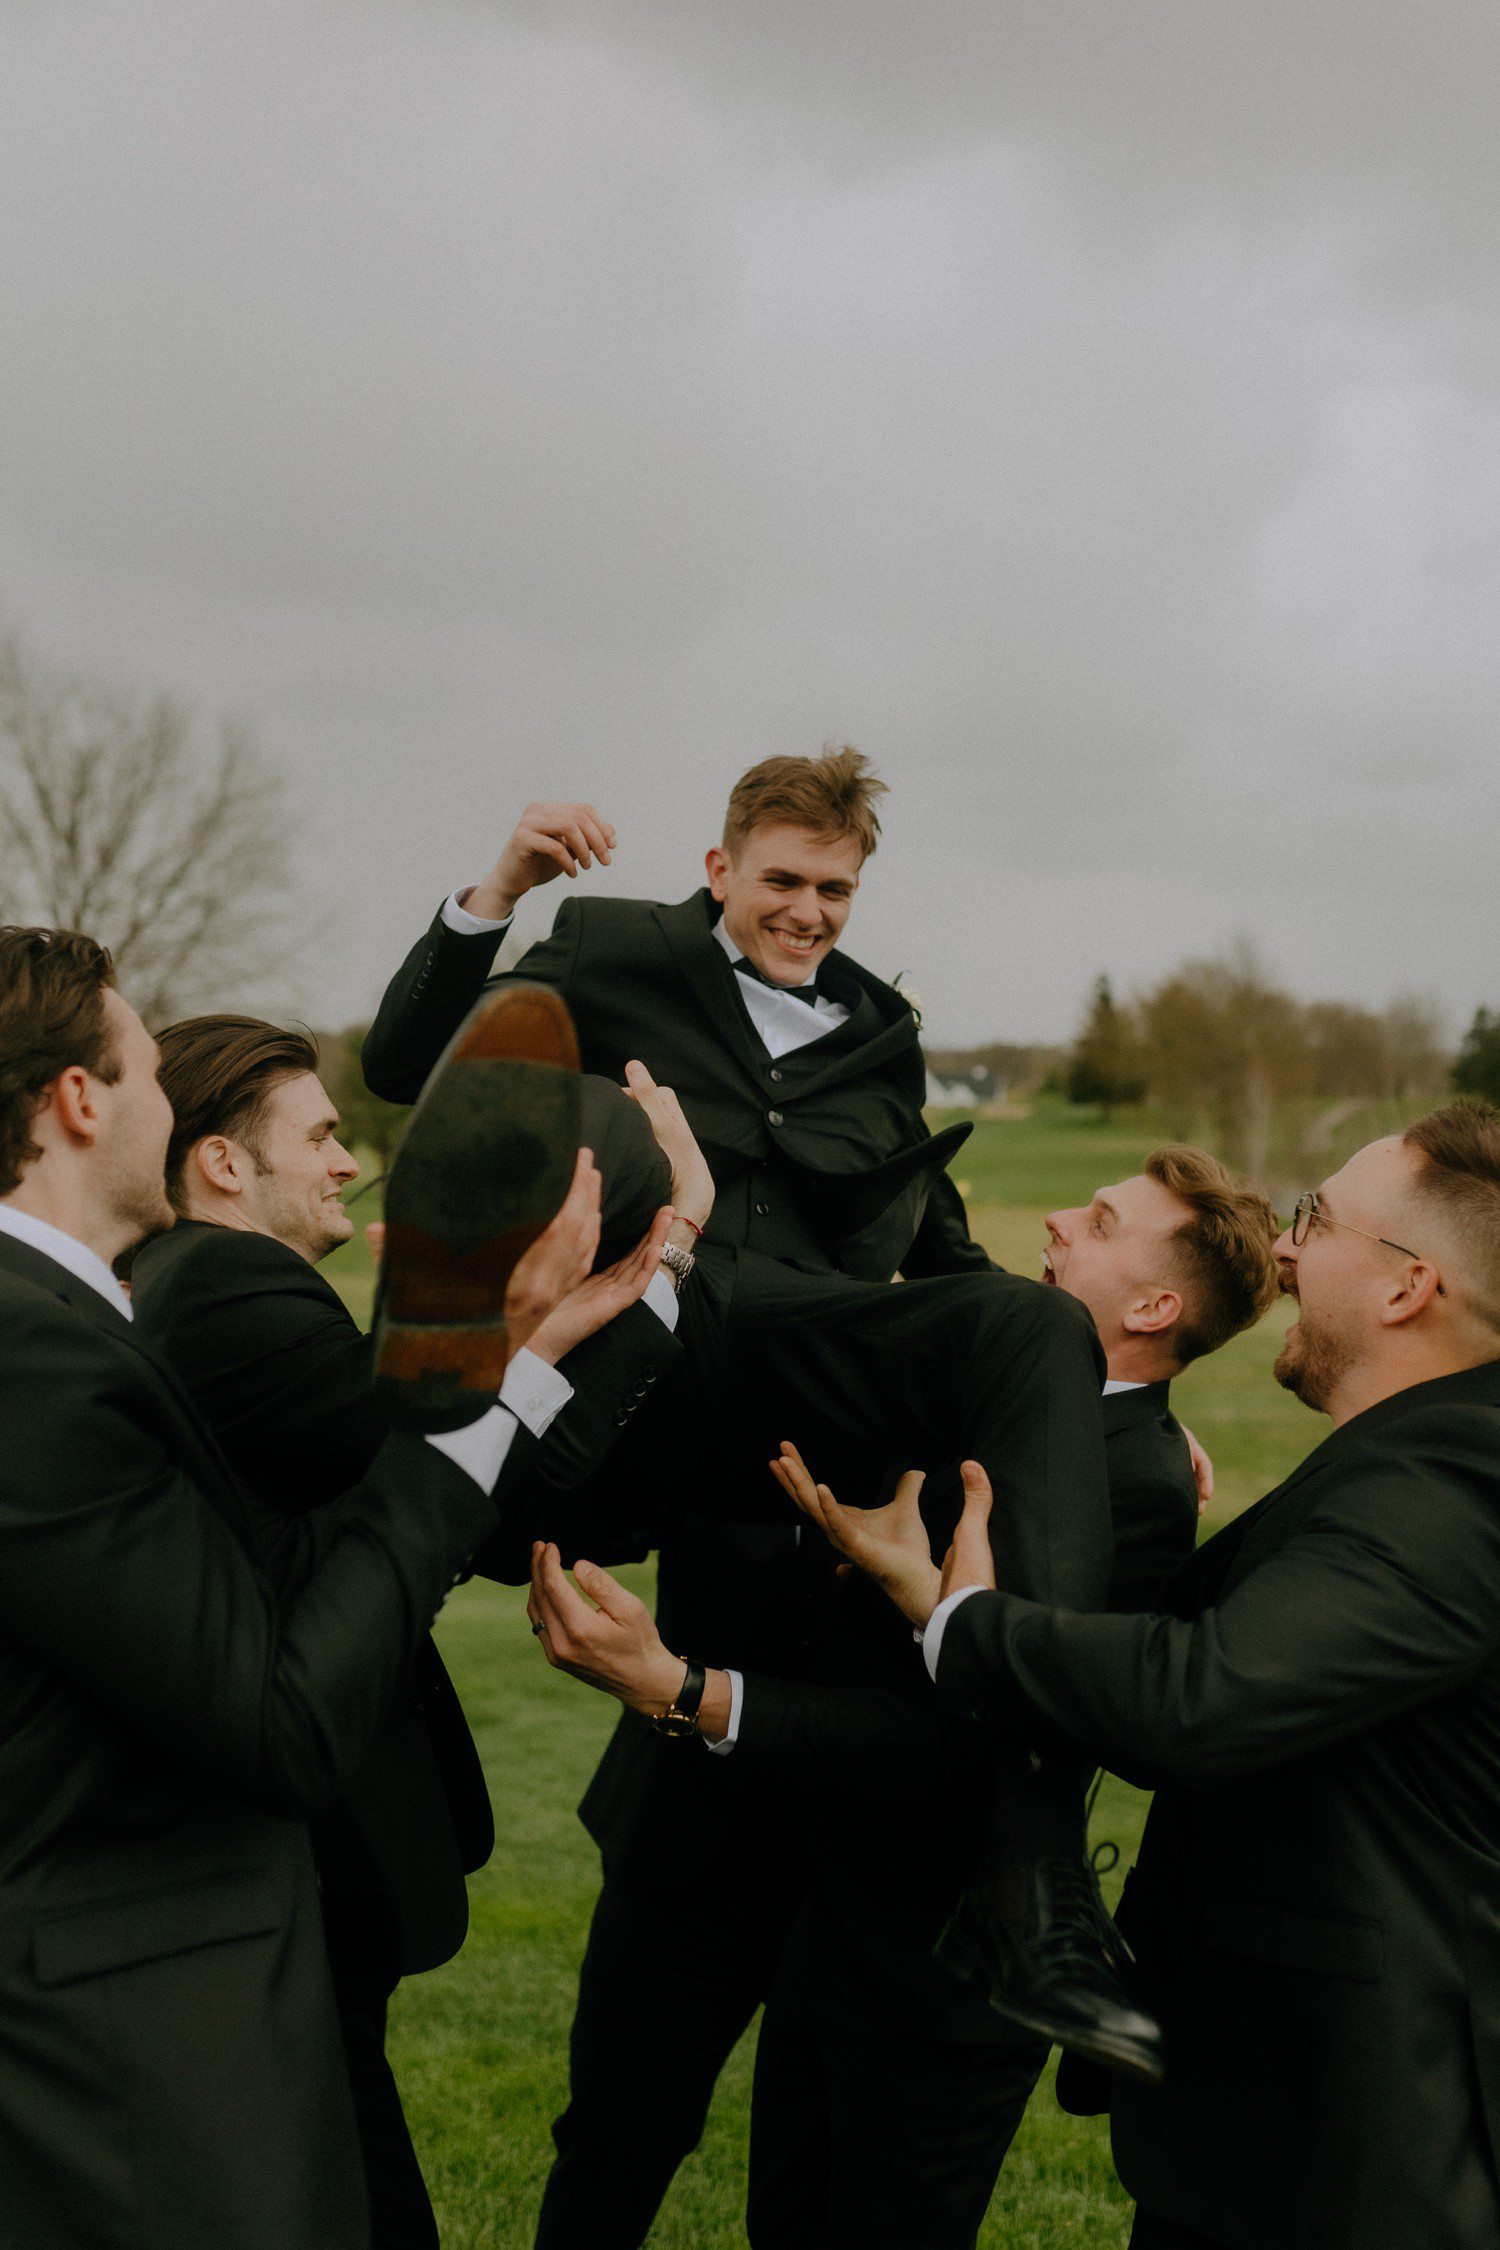 Groomsmen tossing groom in air. 